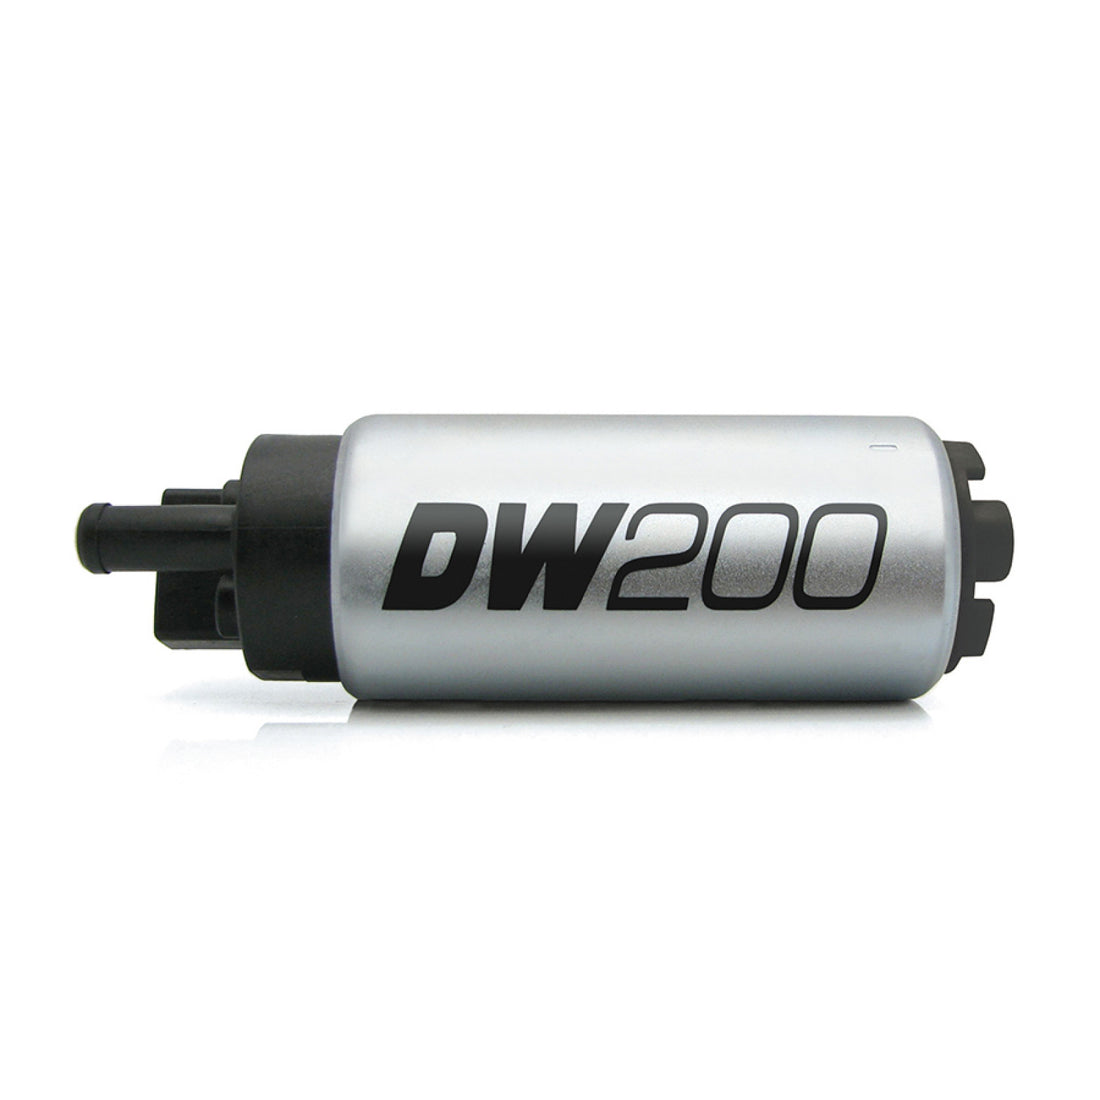 Deatschwerks DW200 255lph Fuel Pump Universal Fit